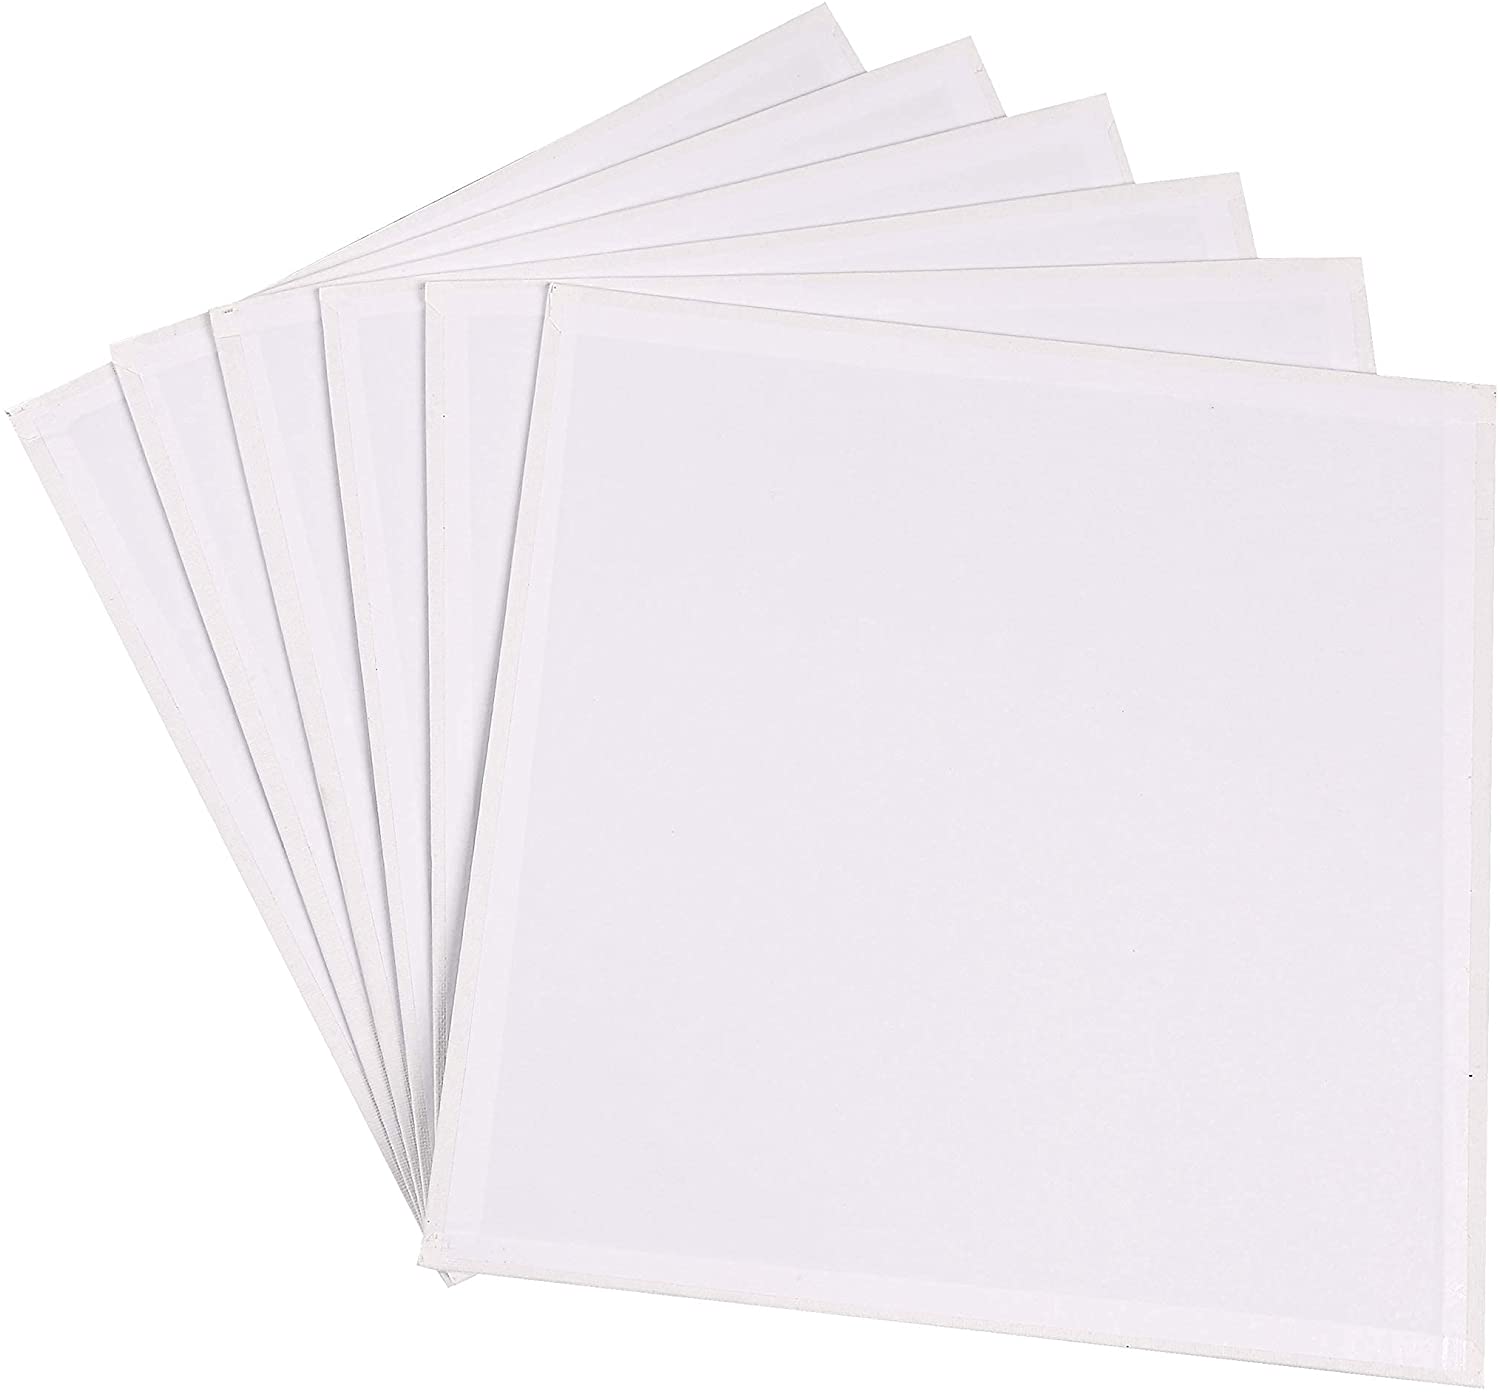 Exerz 30x30cm Canvas Panels 6pcs - 3mm 280gsm 100% Cotton -Square Shape Blank Artist Canvas Board